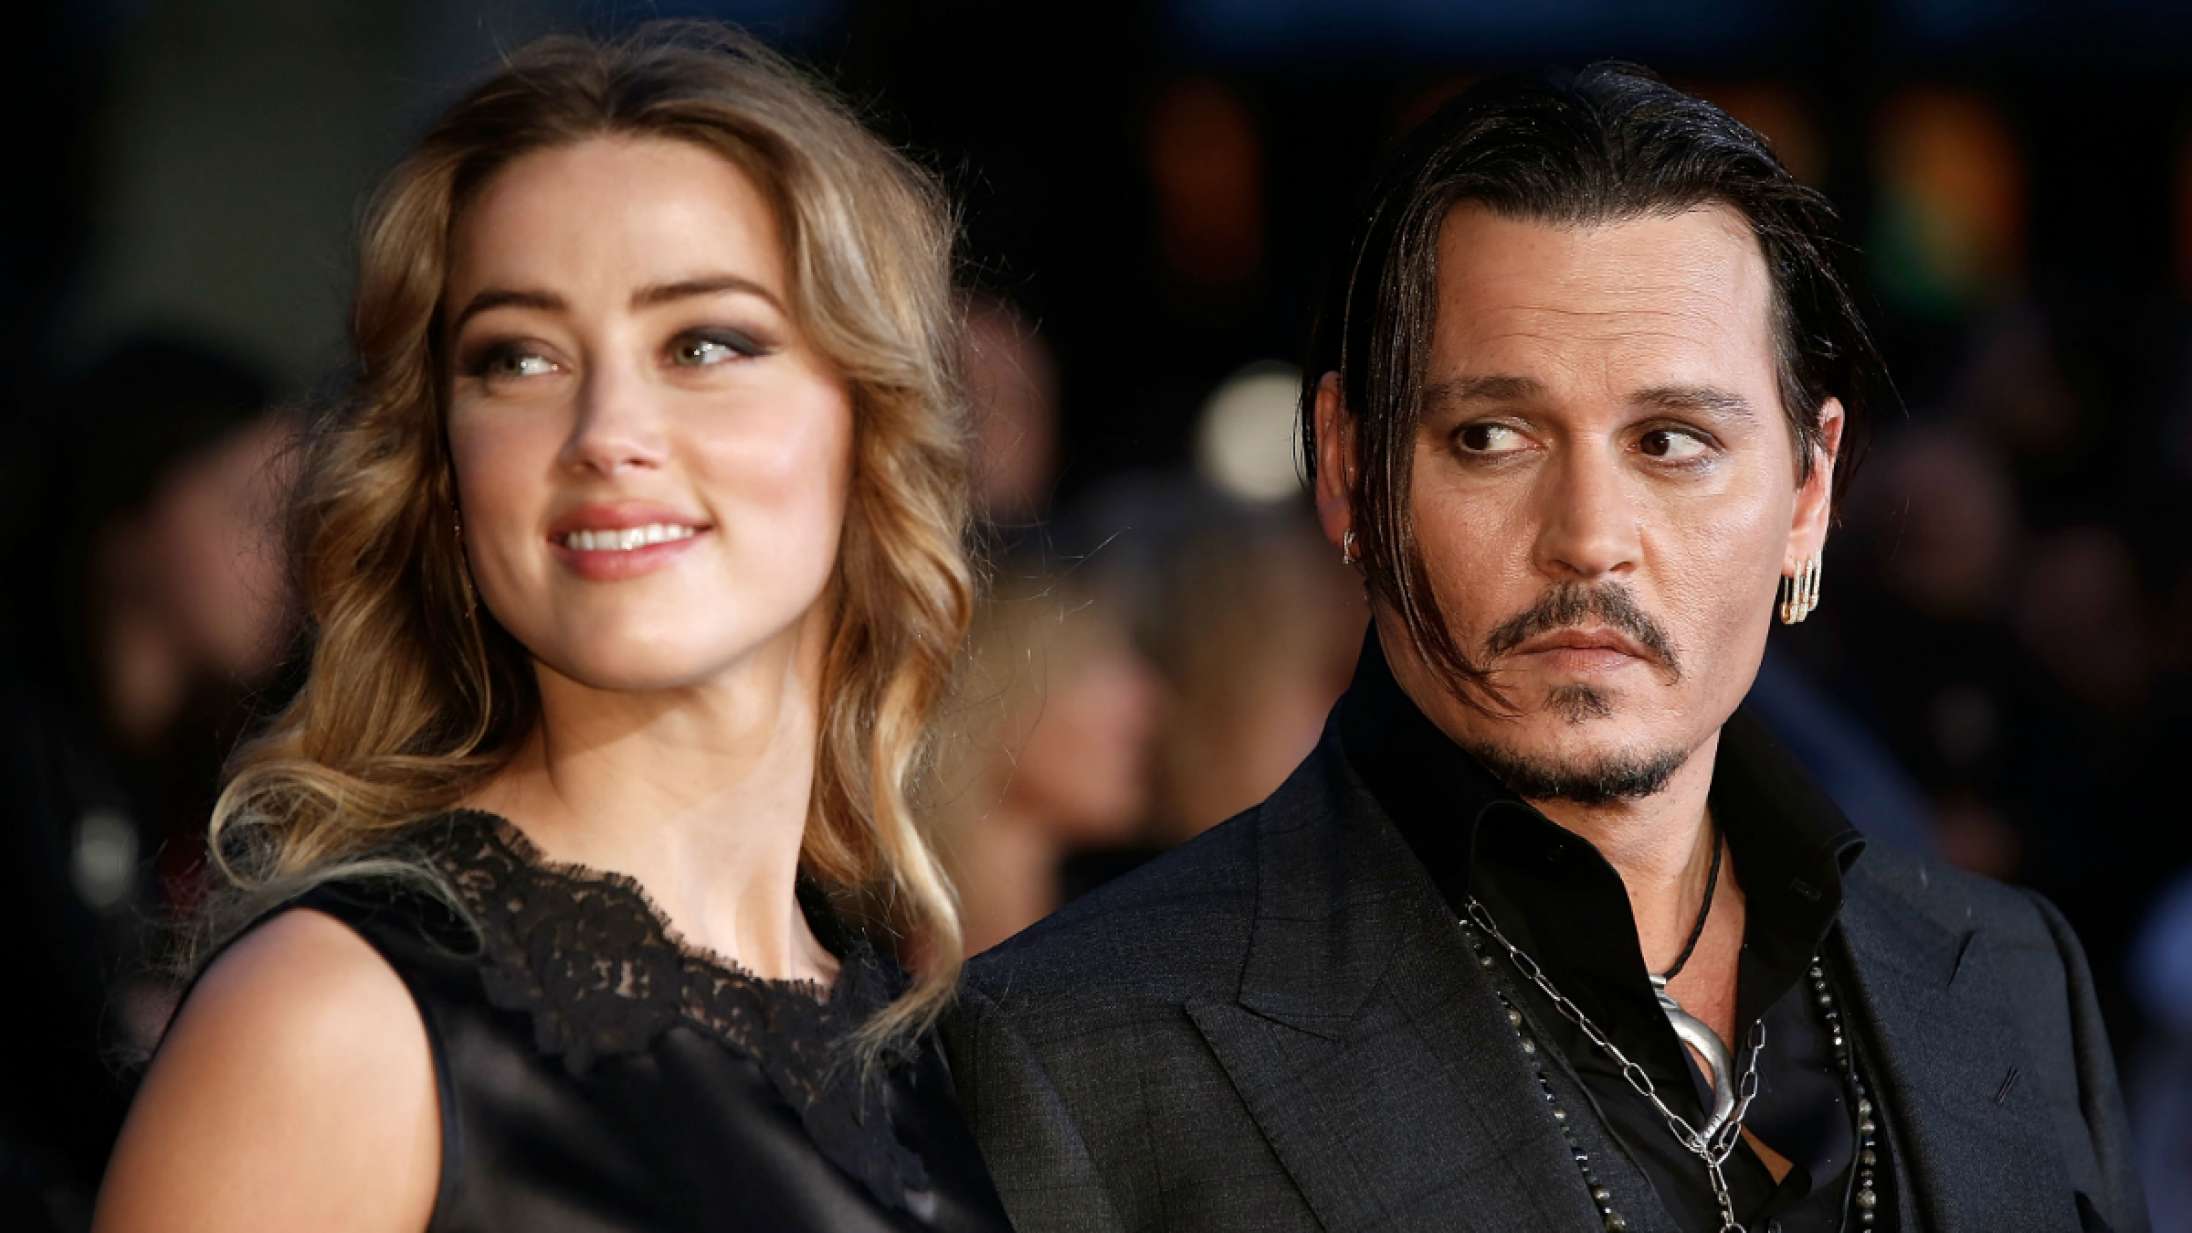 Amber Heards advokat afspiller video af rasende Johnny Depp